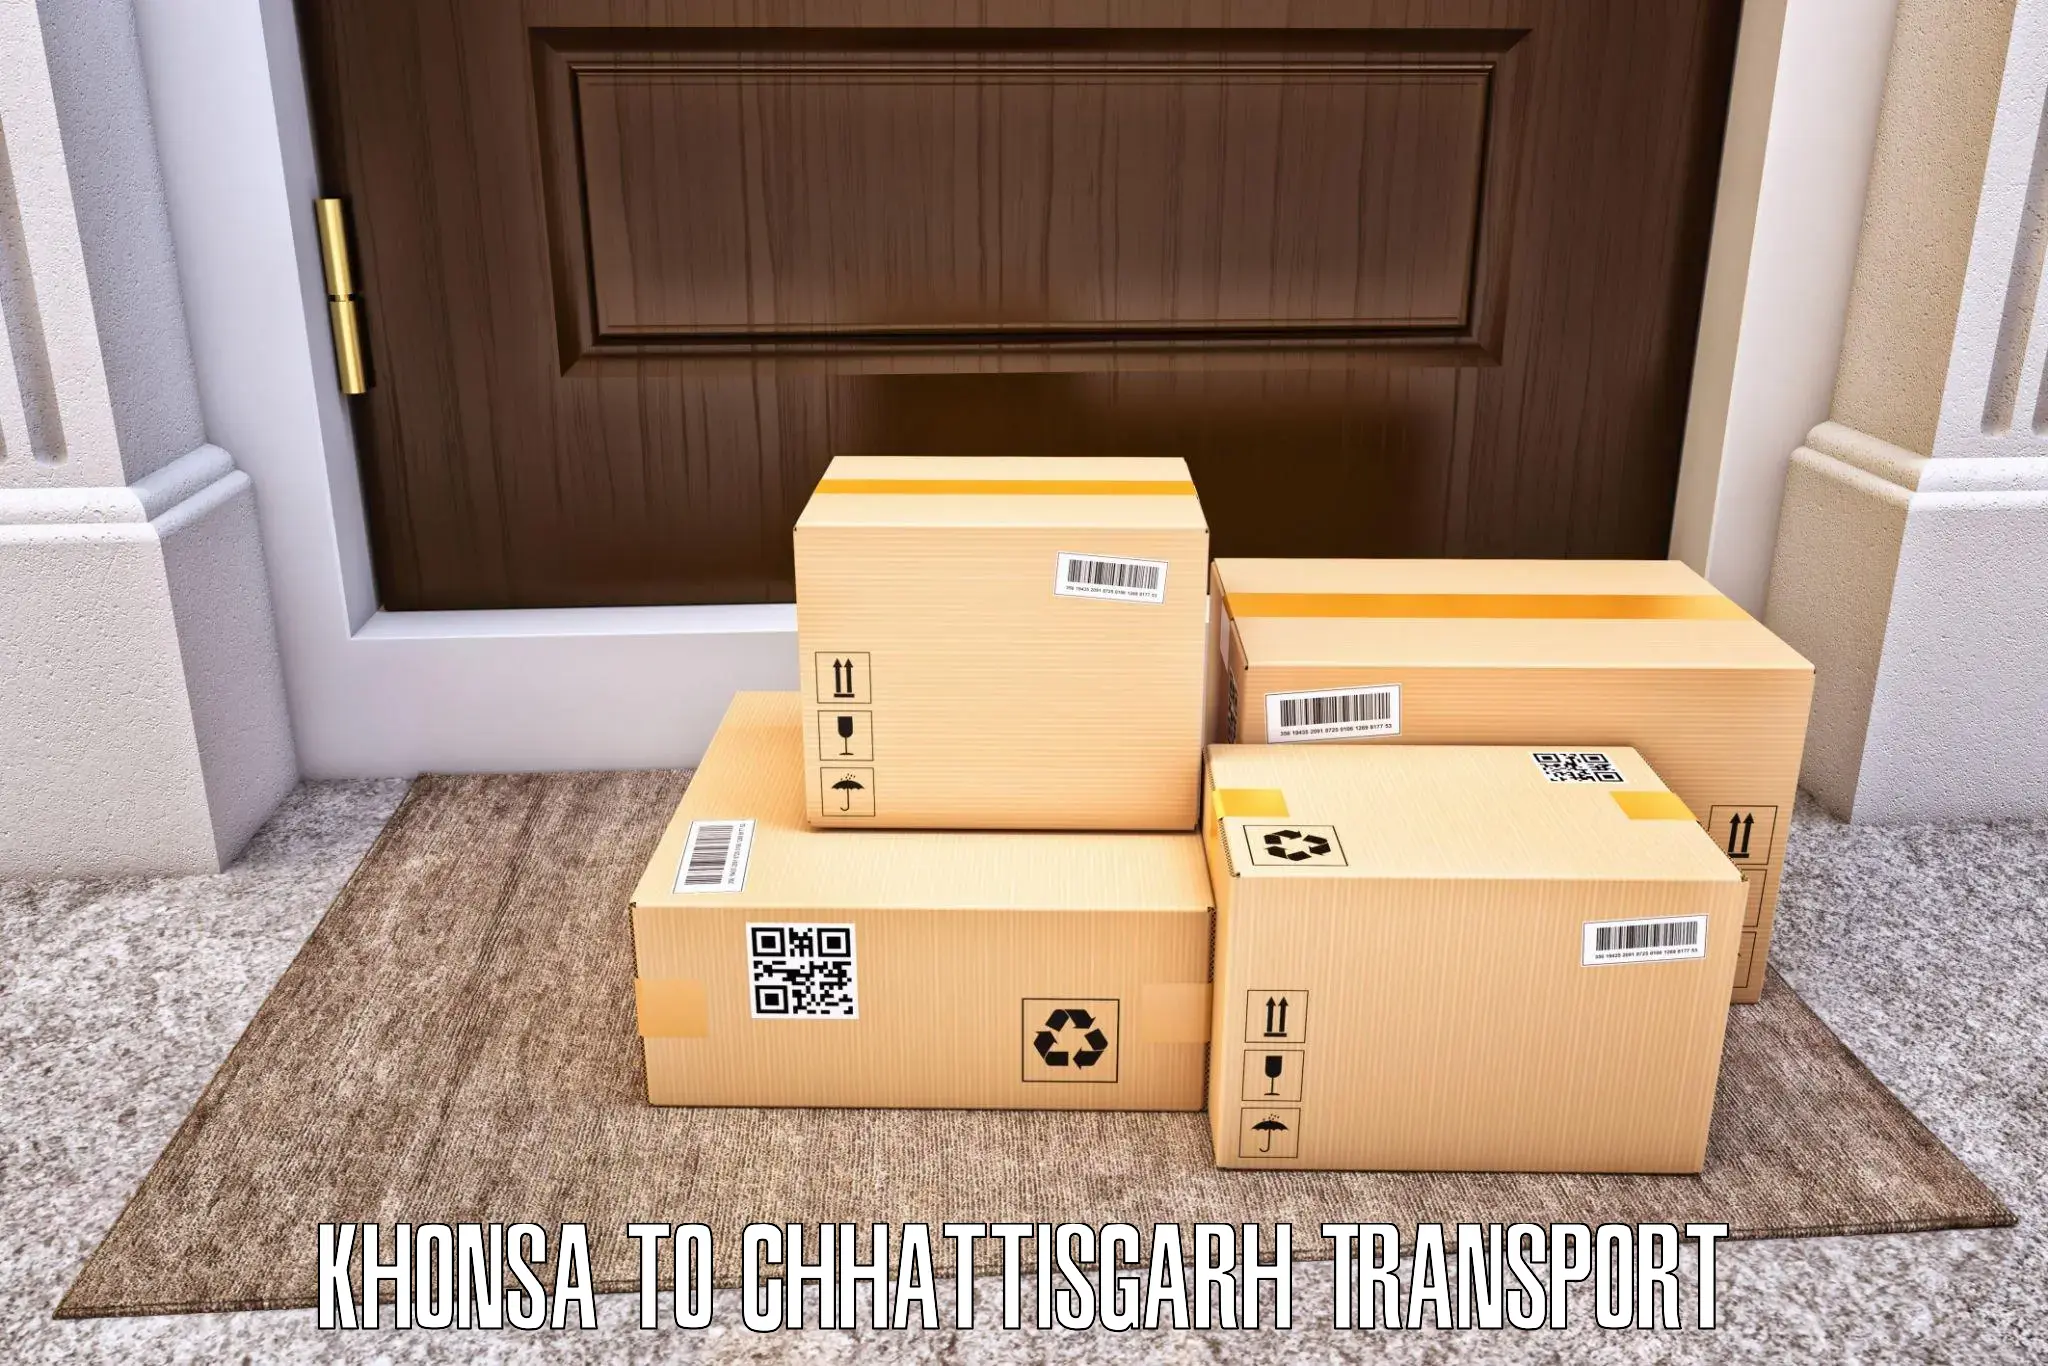 Transport in sharing Khonsa to Manendragarh